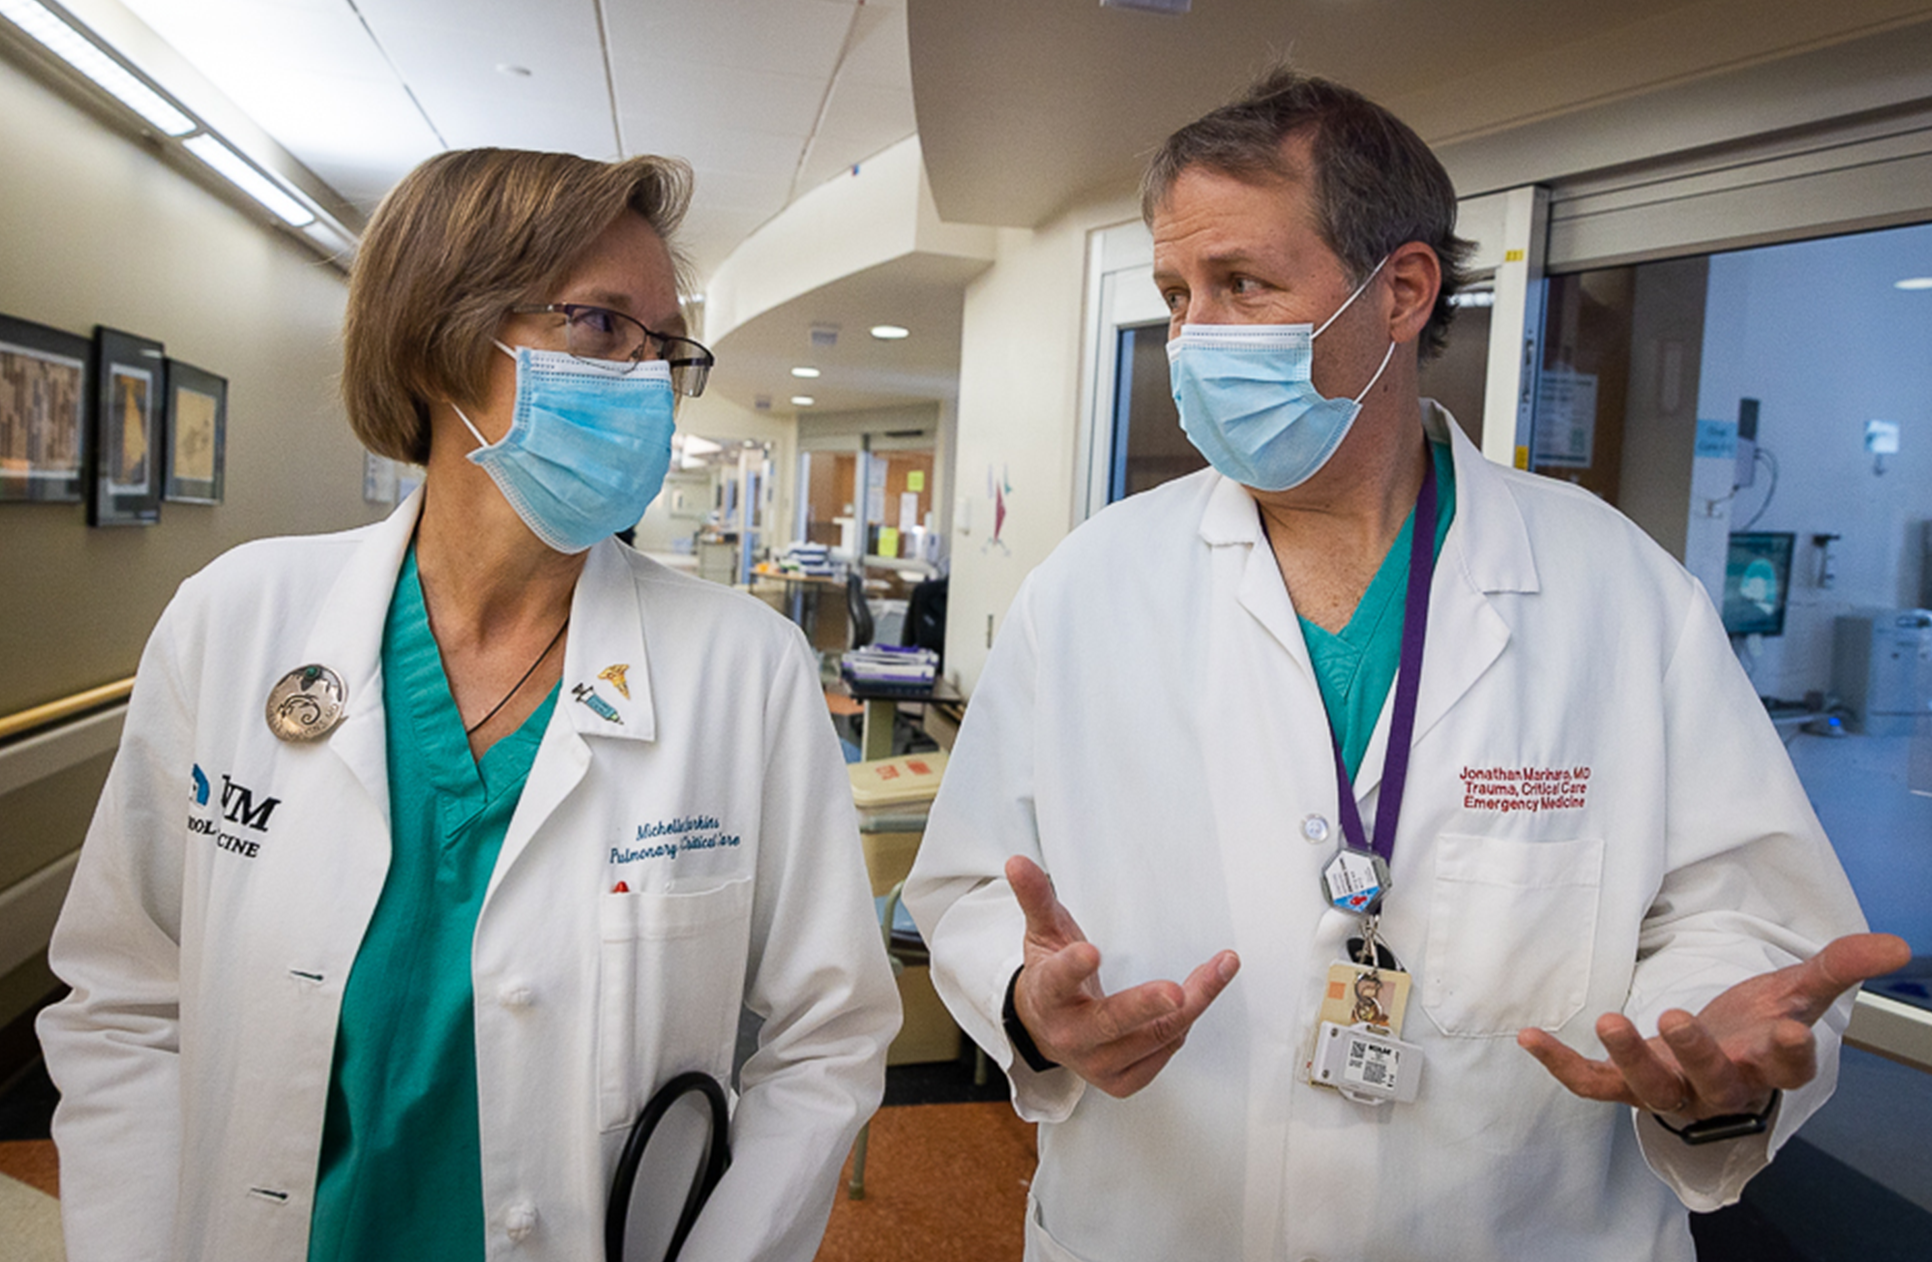 Michelle Harkins（左）和 Jon Marinaro（右）穿过医院急诊室